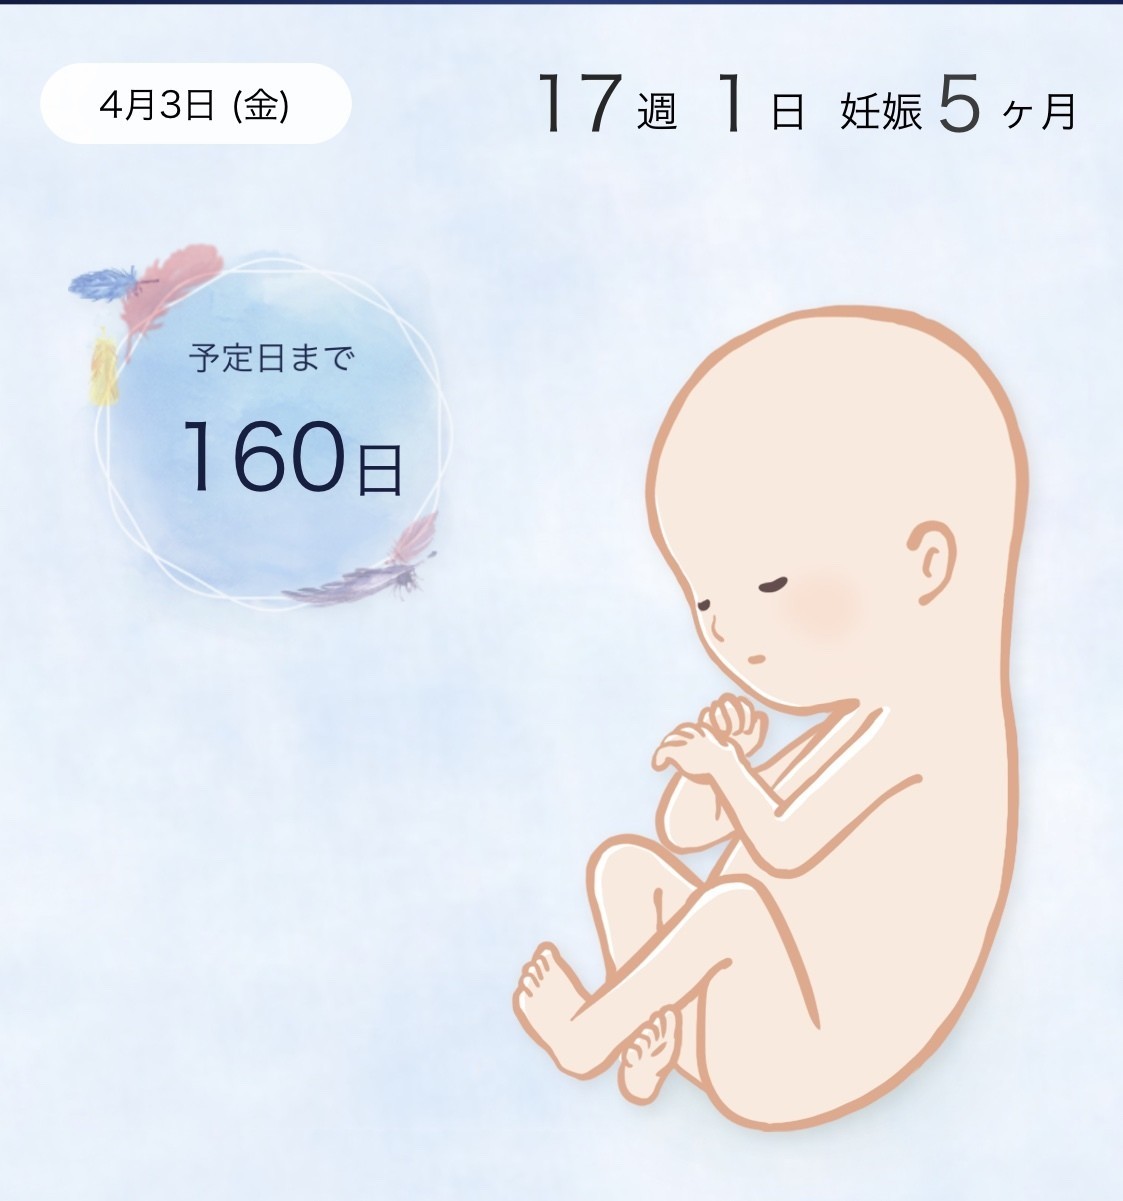 妊娠 出産 おすすめアプリ4選 パパたまごkの勉強部屋 Note